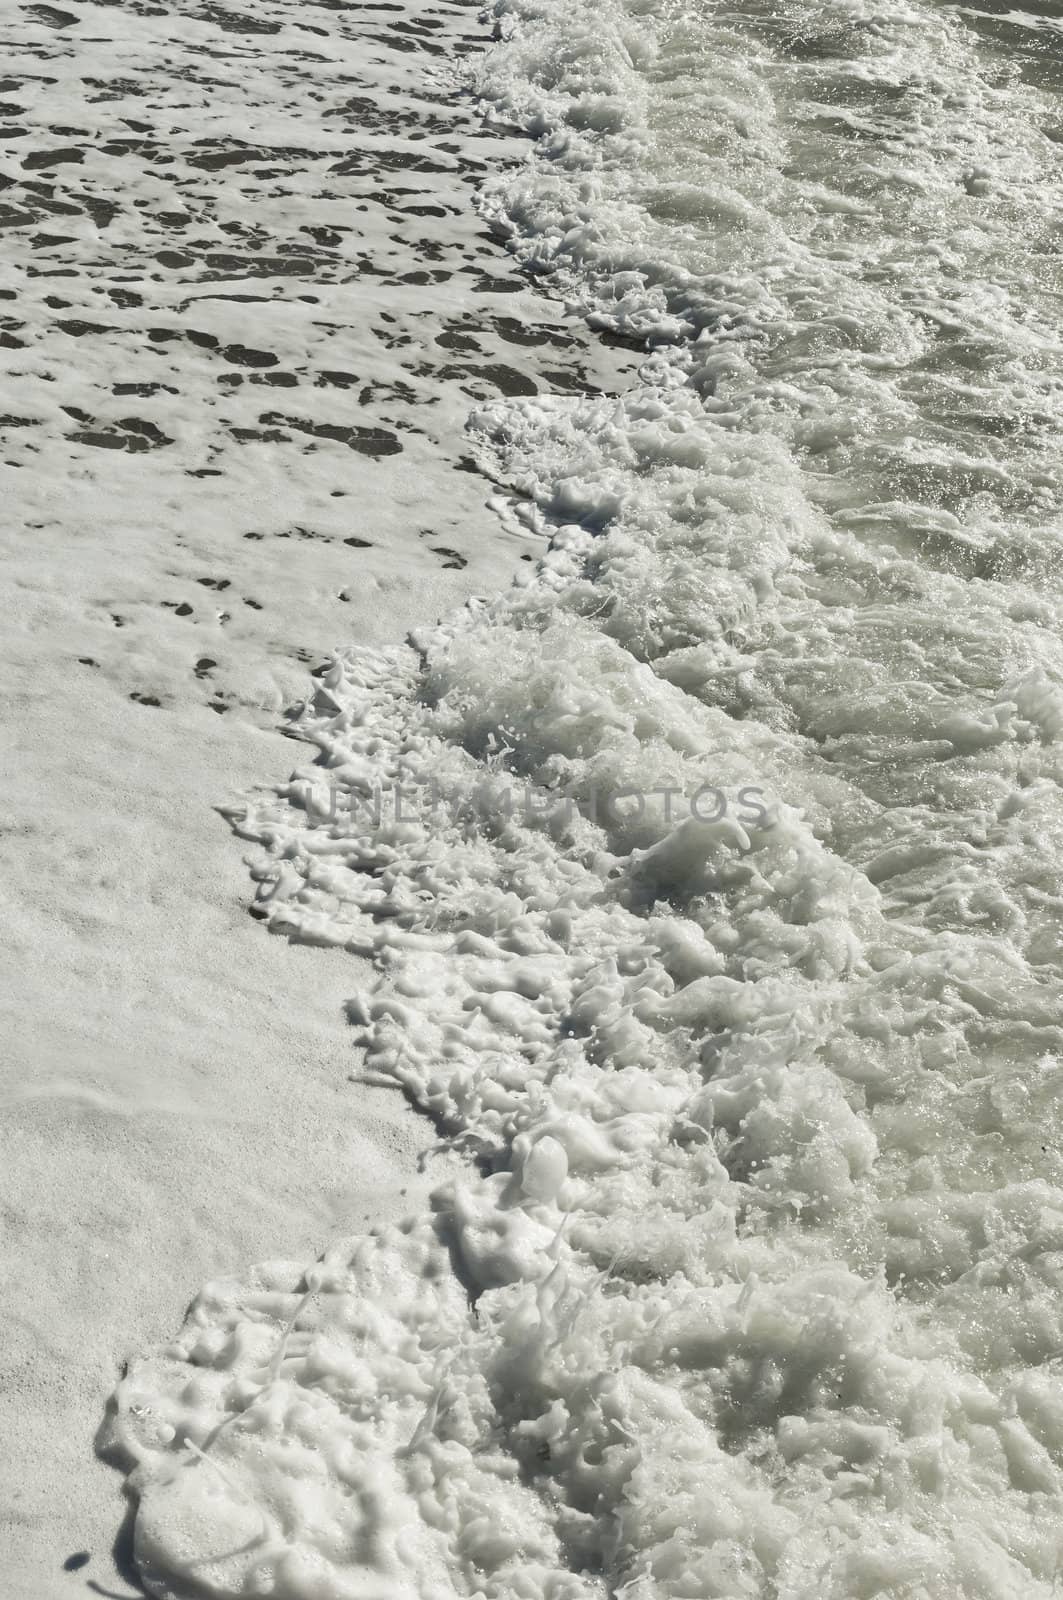 Sea foam by mrfotos